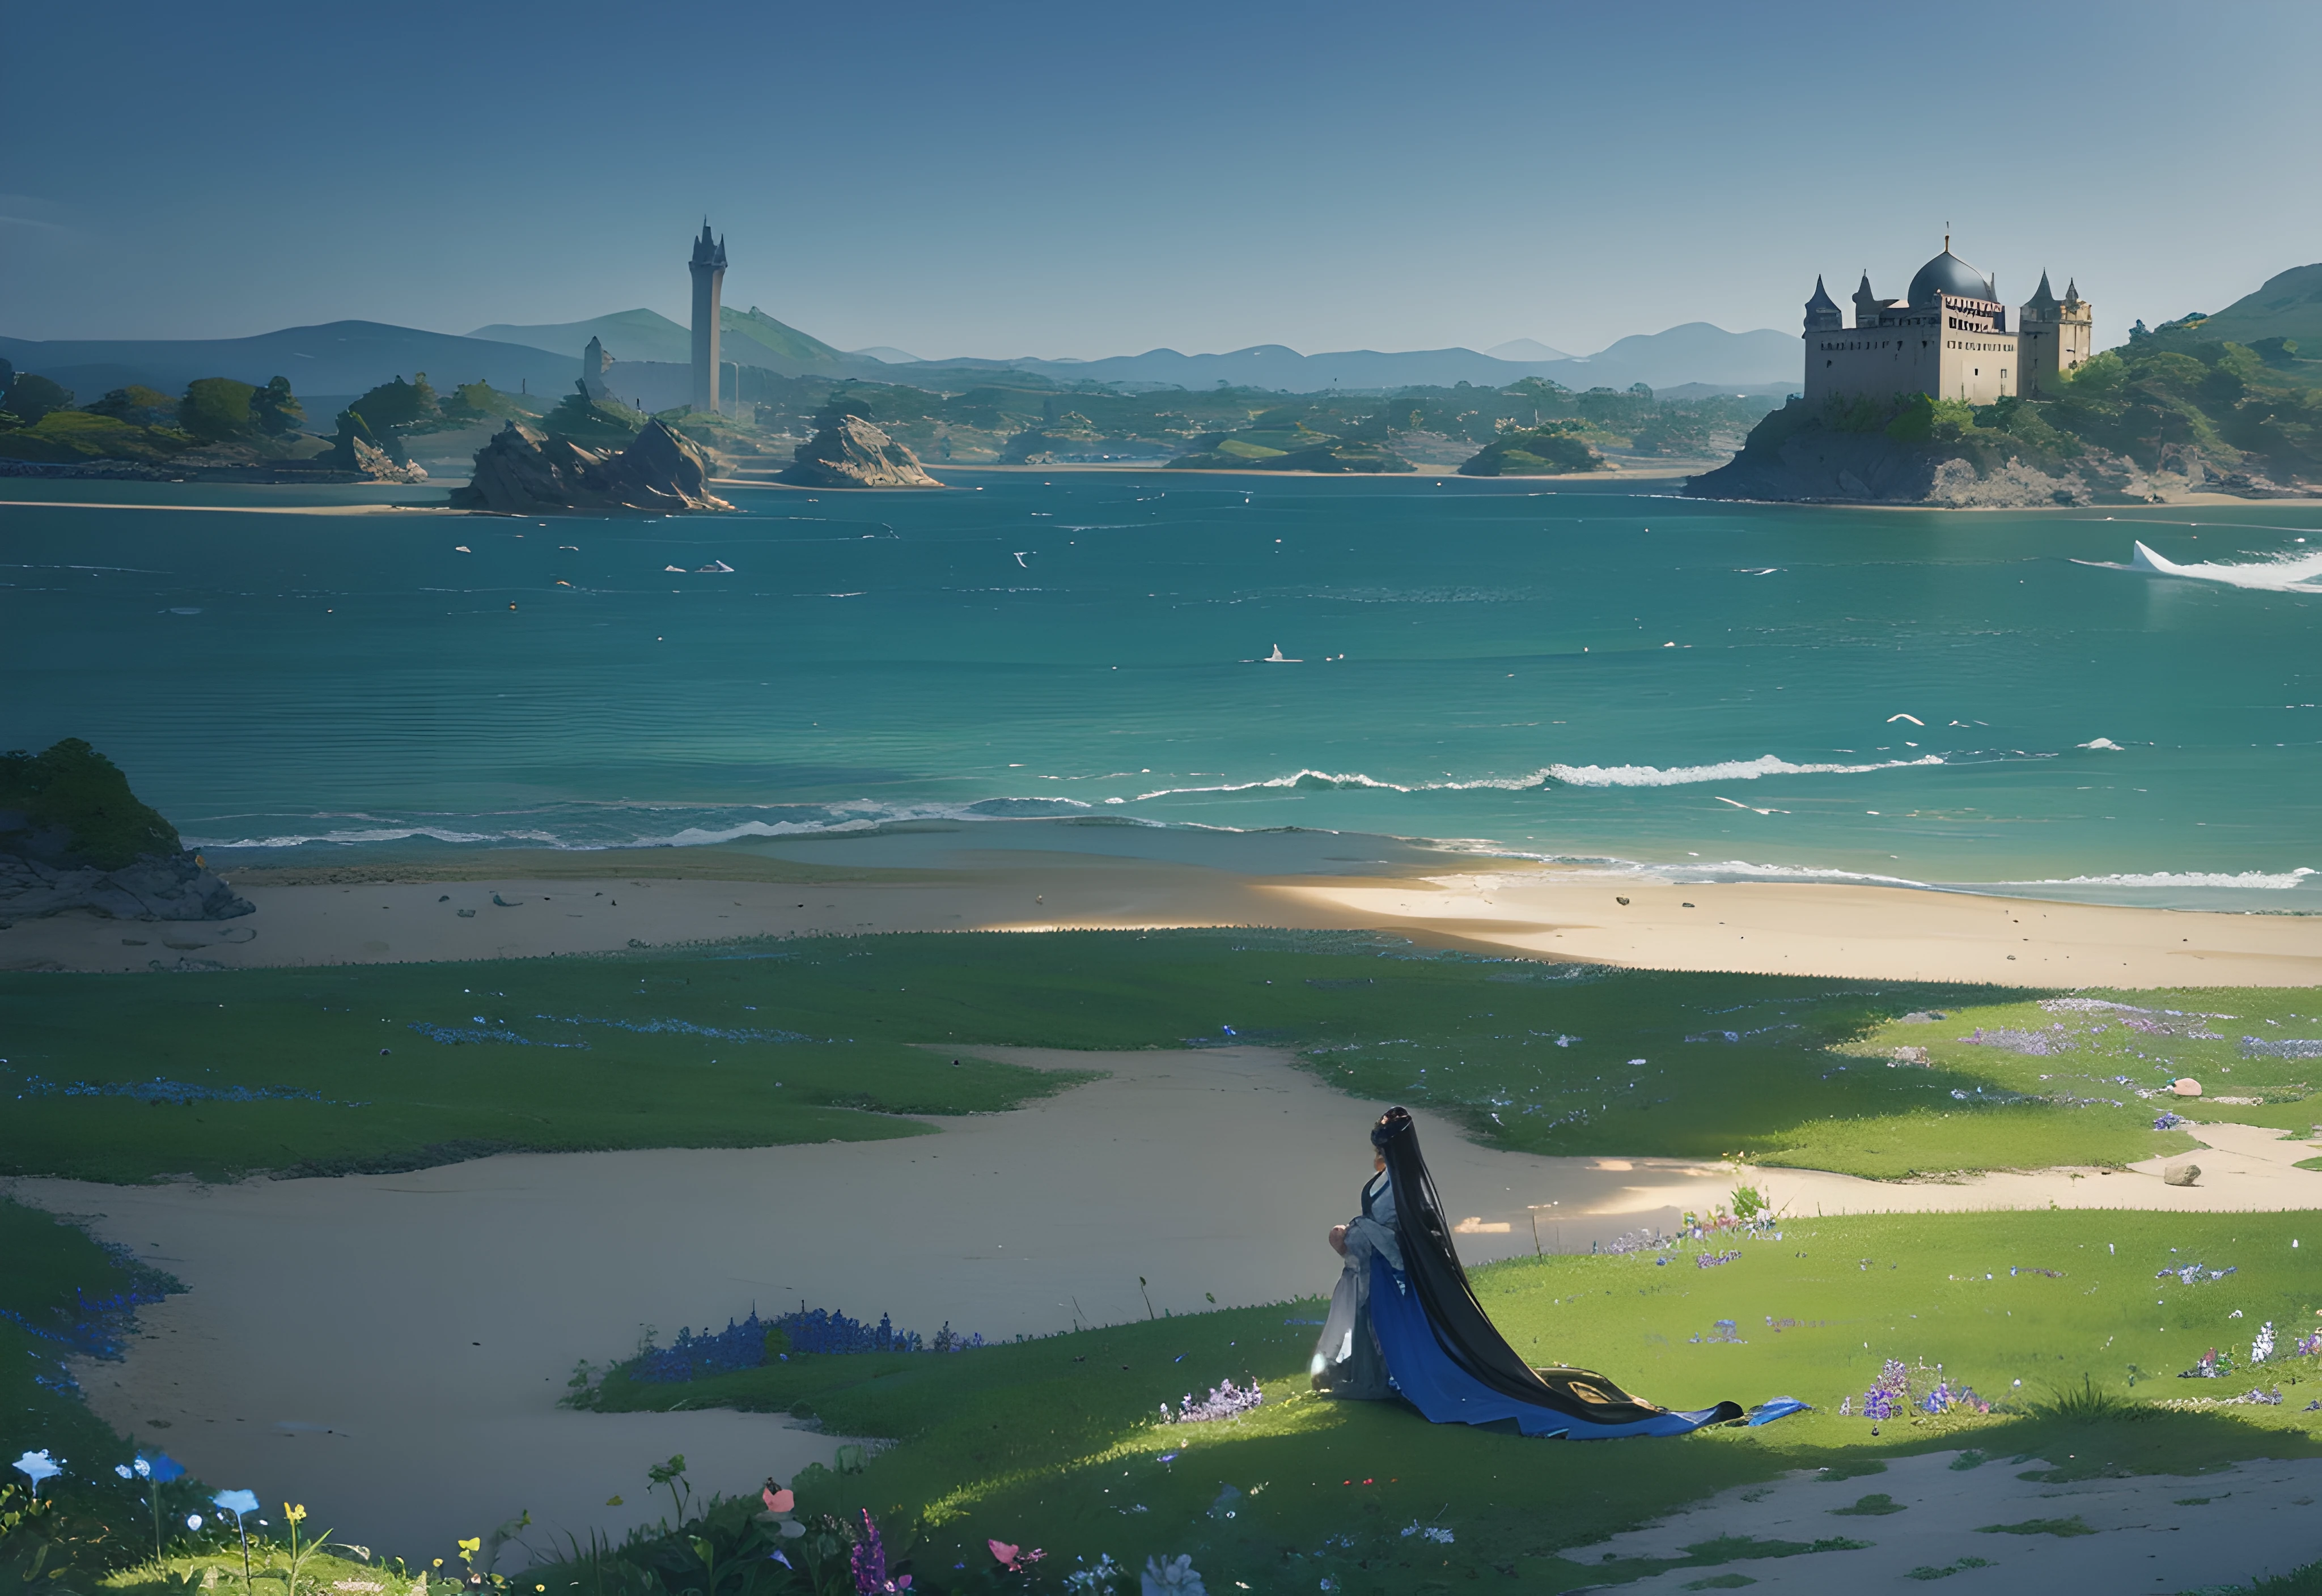 拜埃灣的浮石島旁邊,
在睡夢中看到古老的宮殿和塔樓在海浪更強烈的日子裡顫抖,
到處都長滿了蔚藍的苔蘚和花